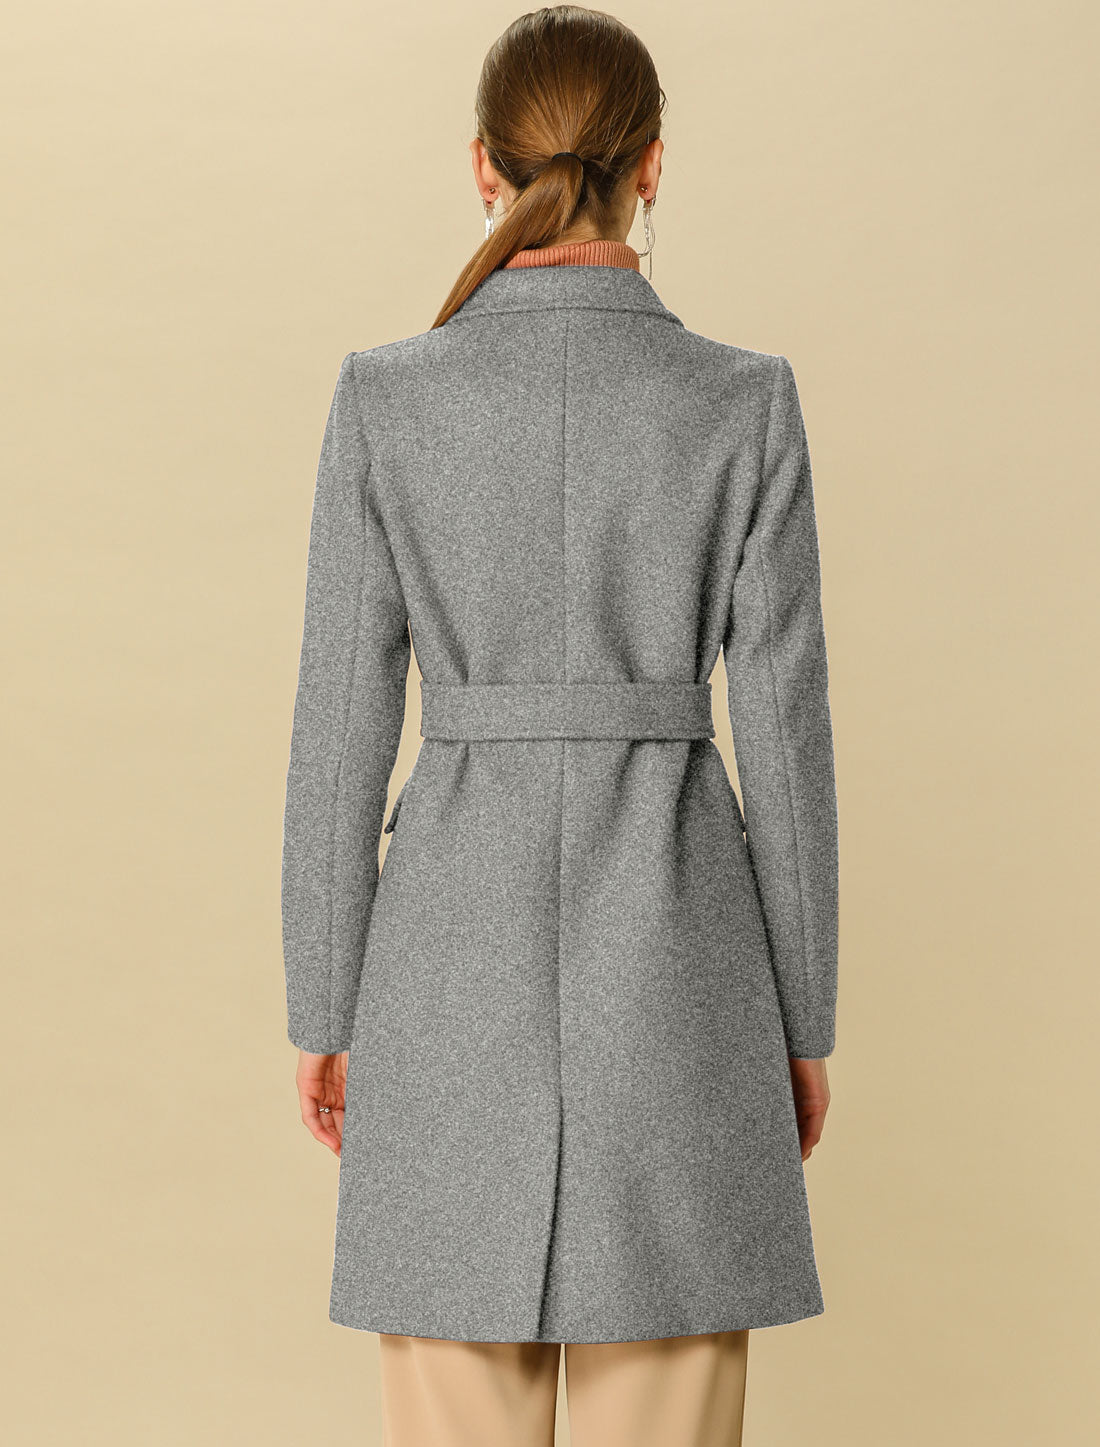 Allegra K Notch Lapel Double Breasted Belted Mid Long Outwear Winter Coat Grey